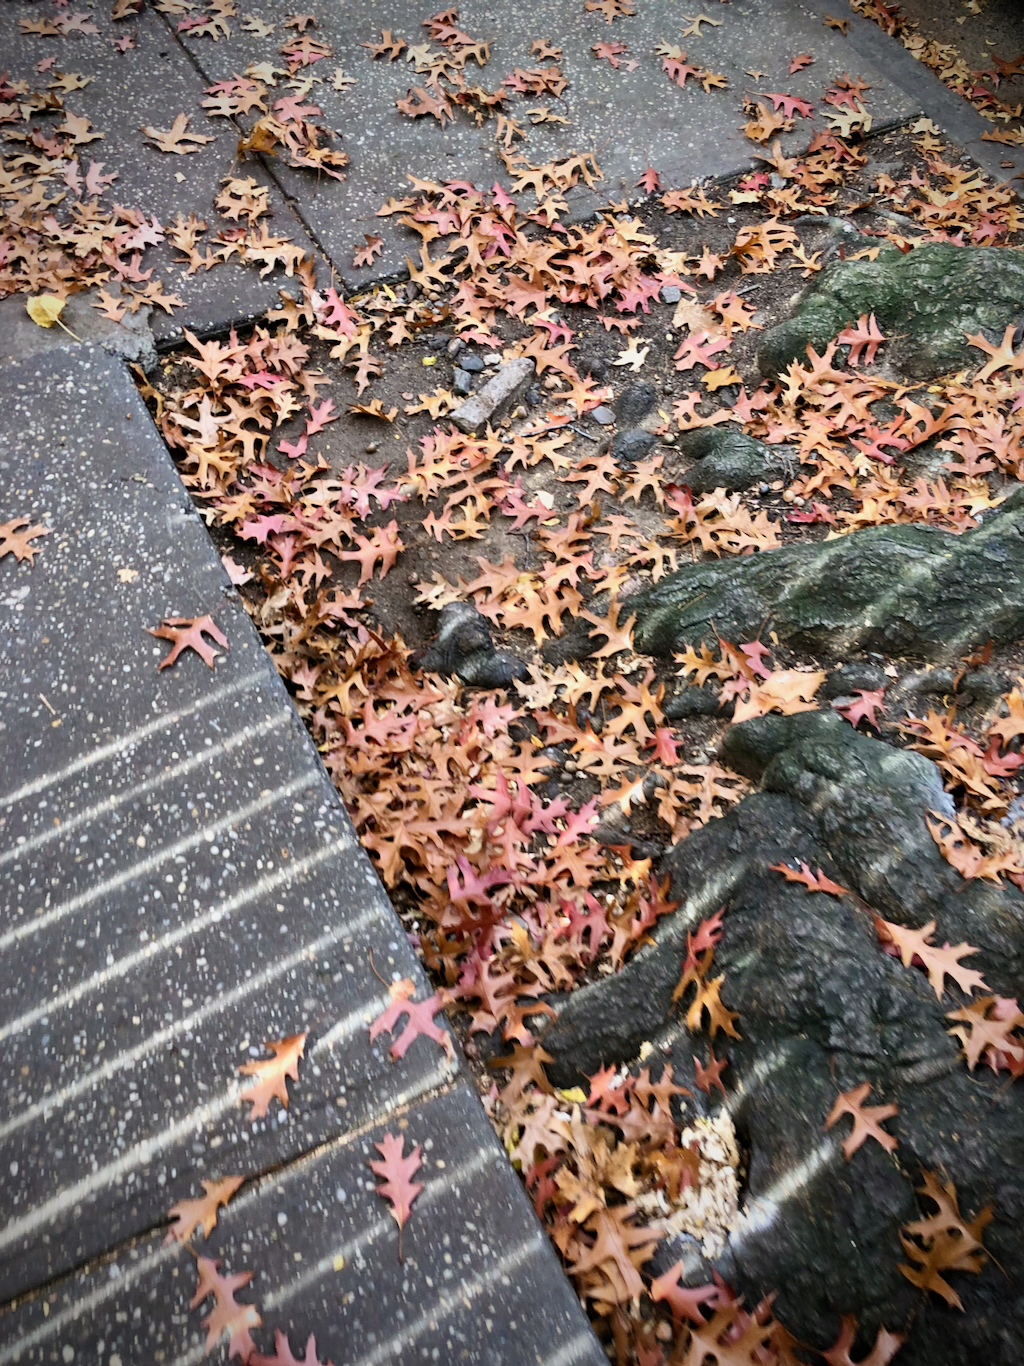 Fallen leaves on the sidewalk.